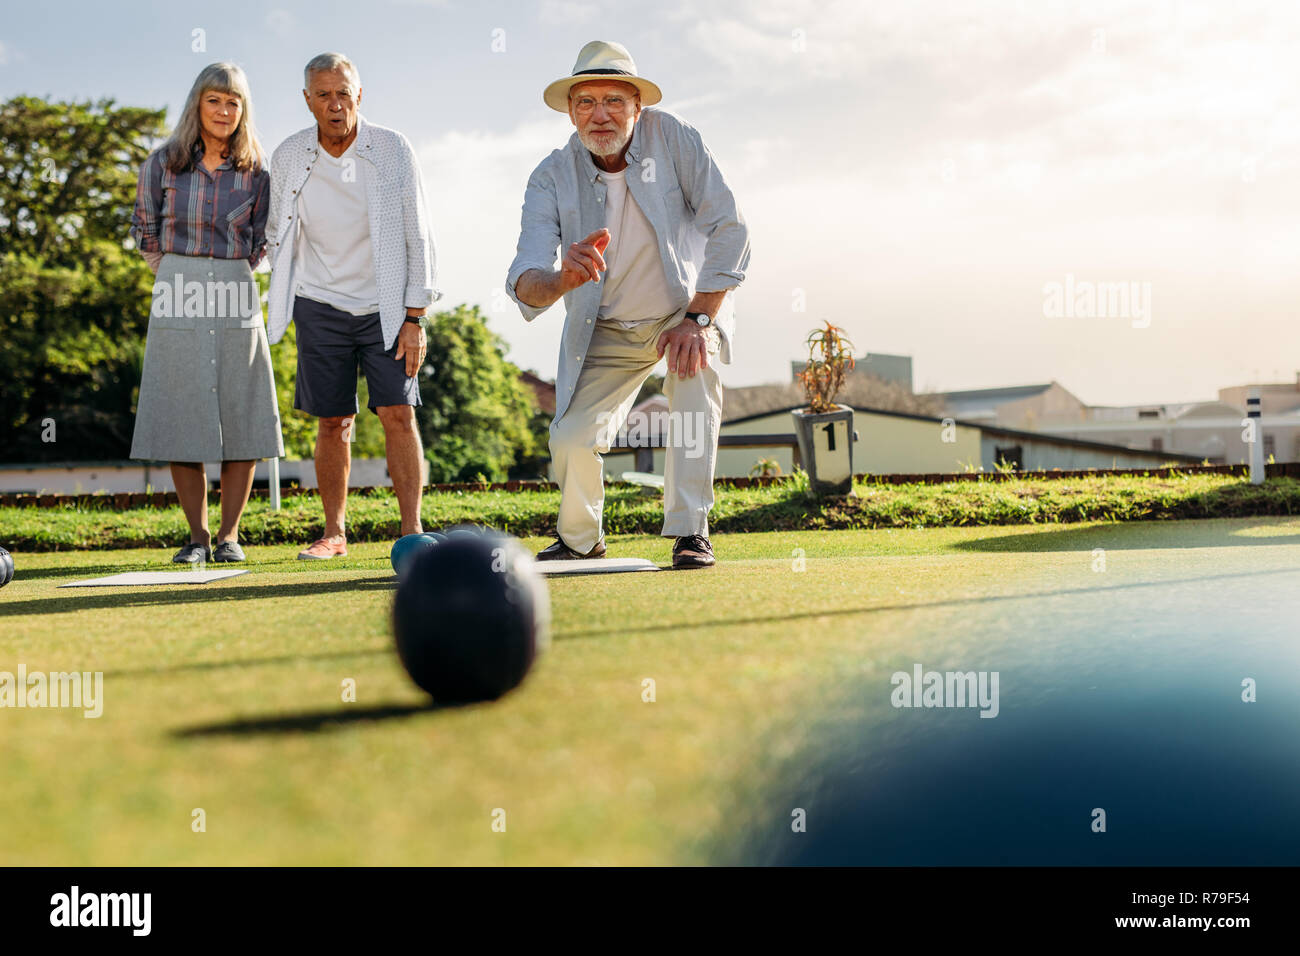 Ältere Menschen in den Hut werfen einer Boule, während seine Freunde auf. Zwei alte Männer und eine Frau ein Spiel spielen Boule in einem Rasen auf einem sonnigen Tag. Stockfoto